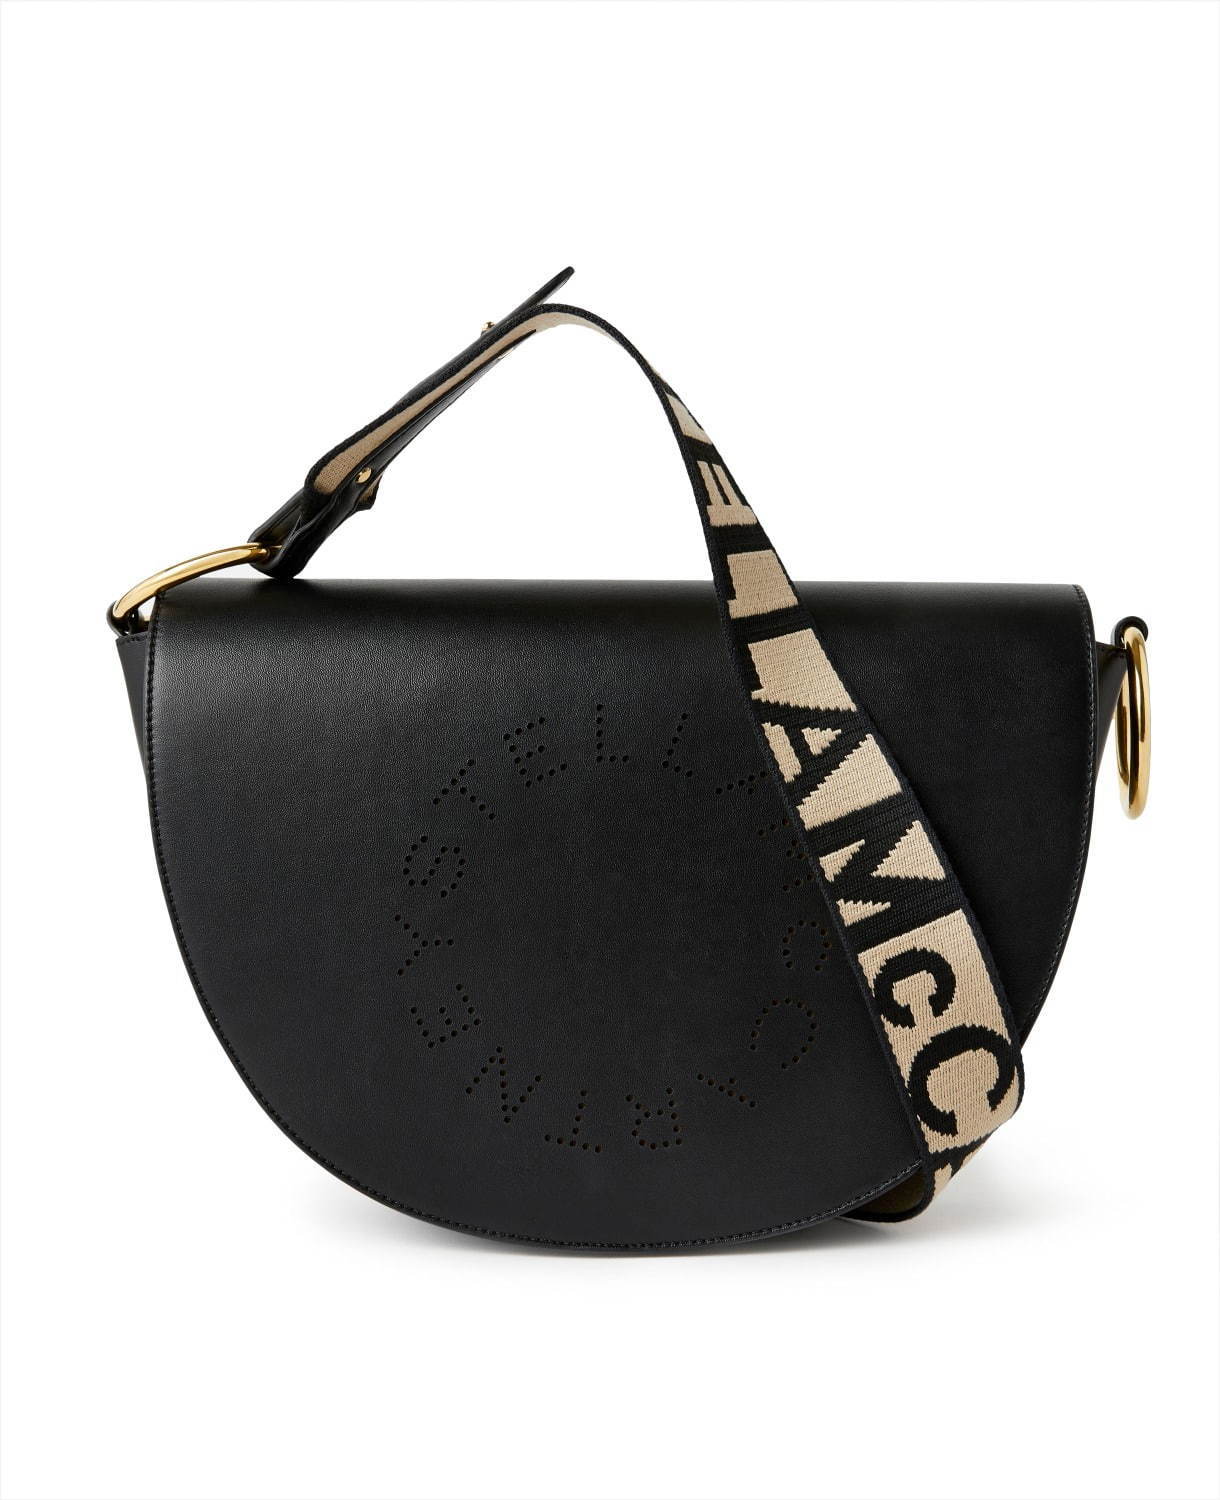 ステラ マッカートニーの新作ロゴバッグ、ハーフムーン型「マーリー